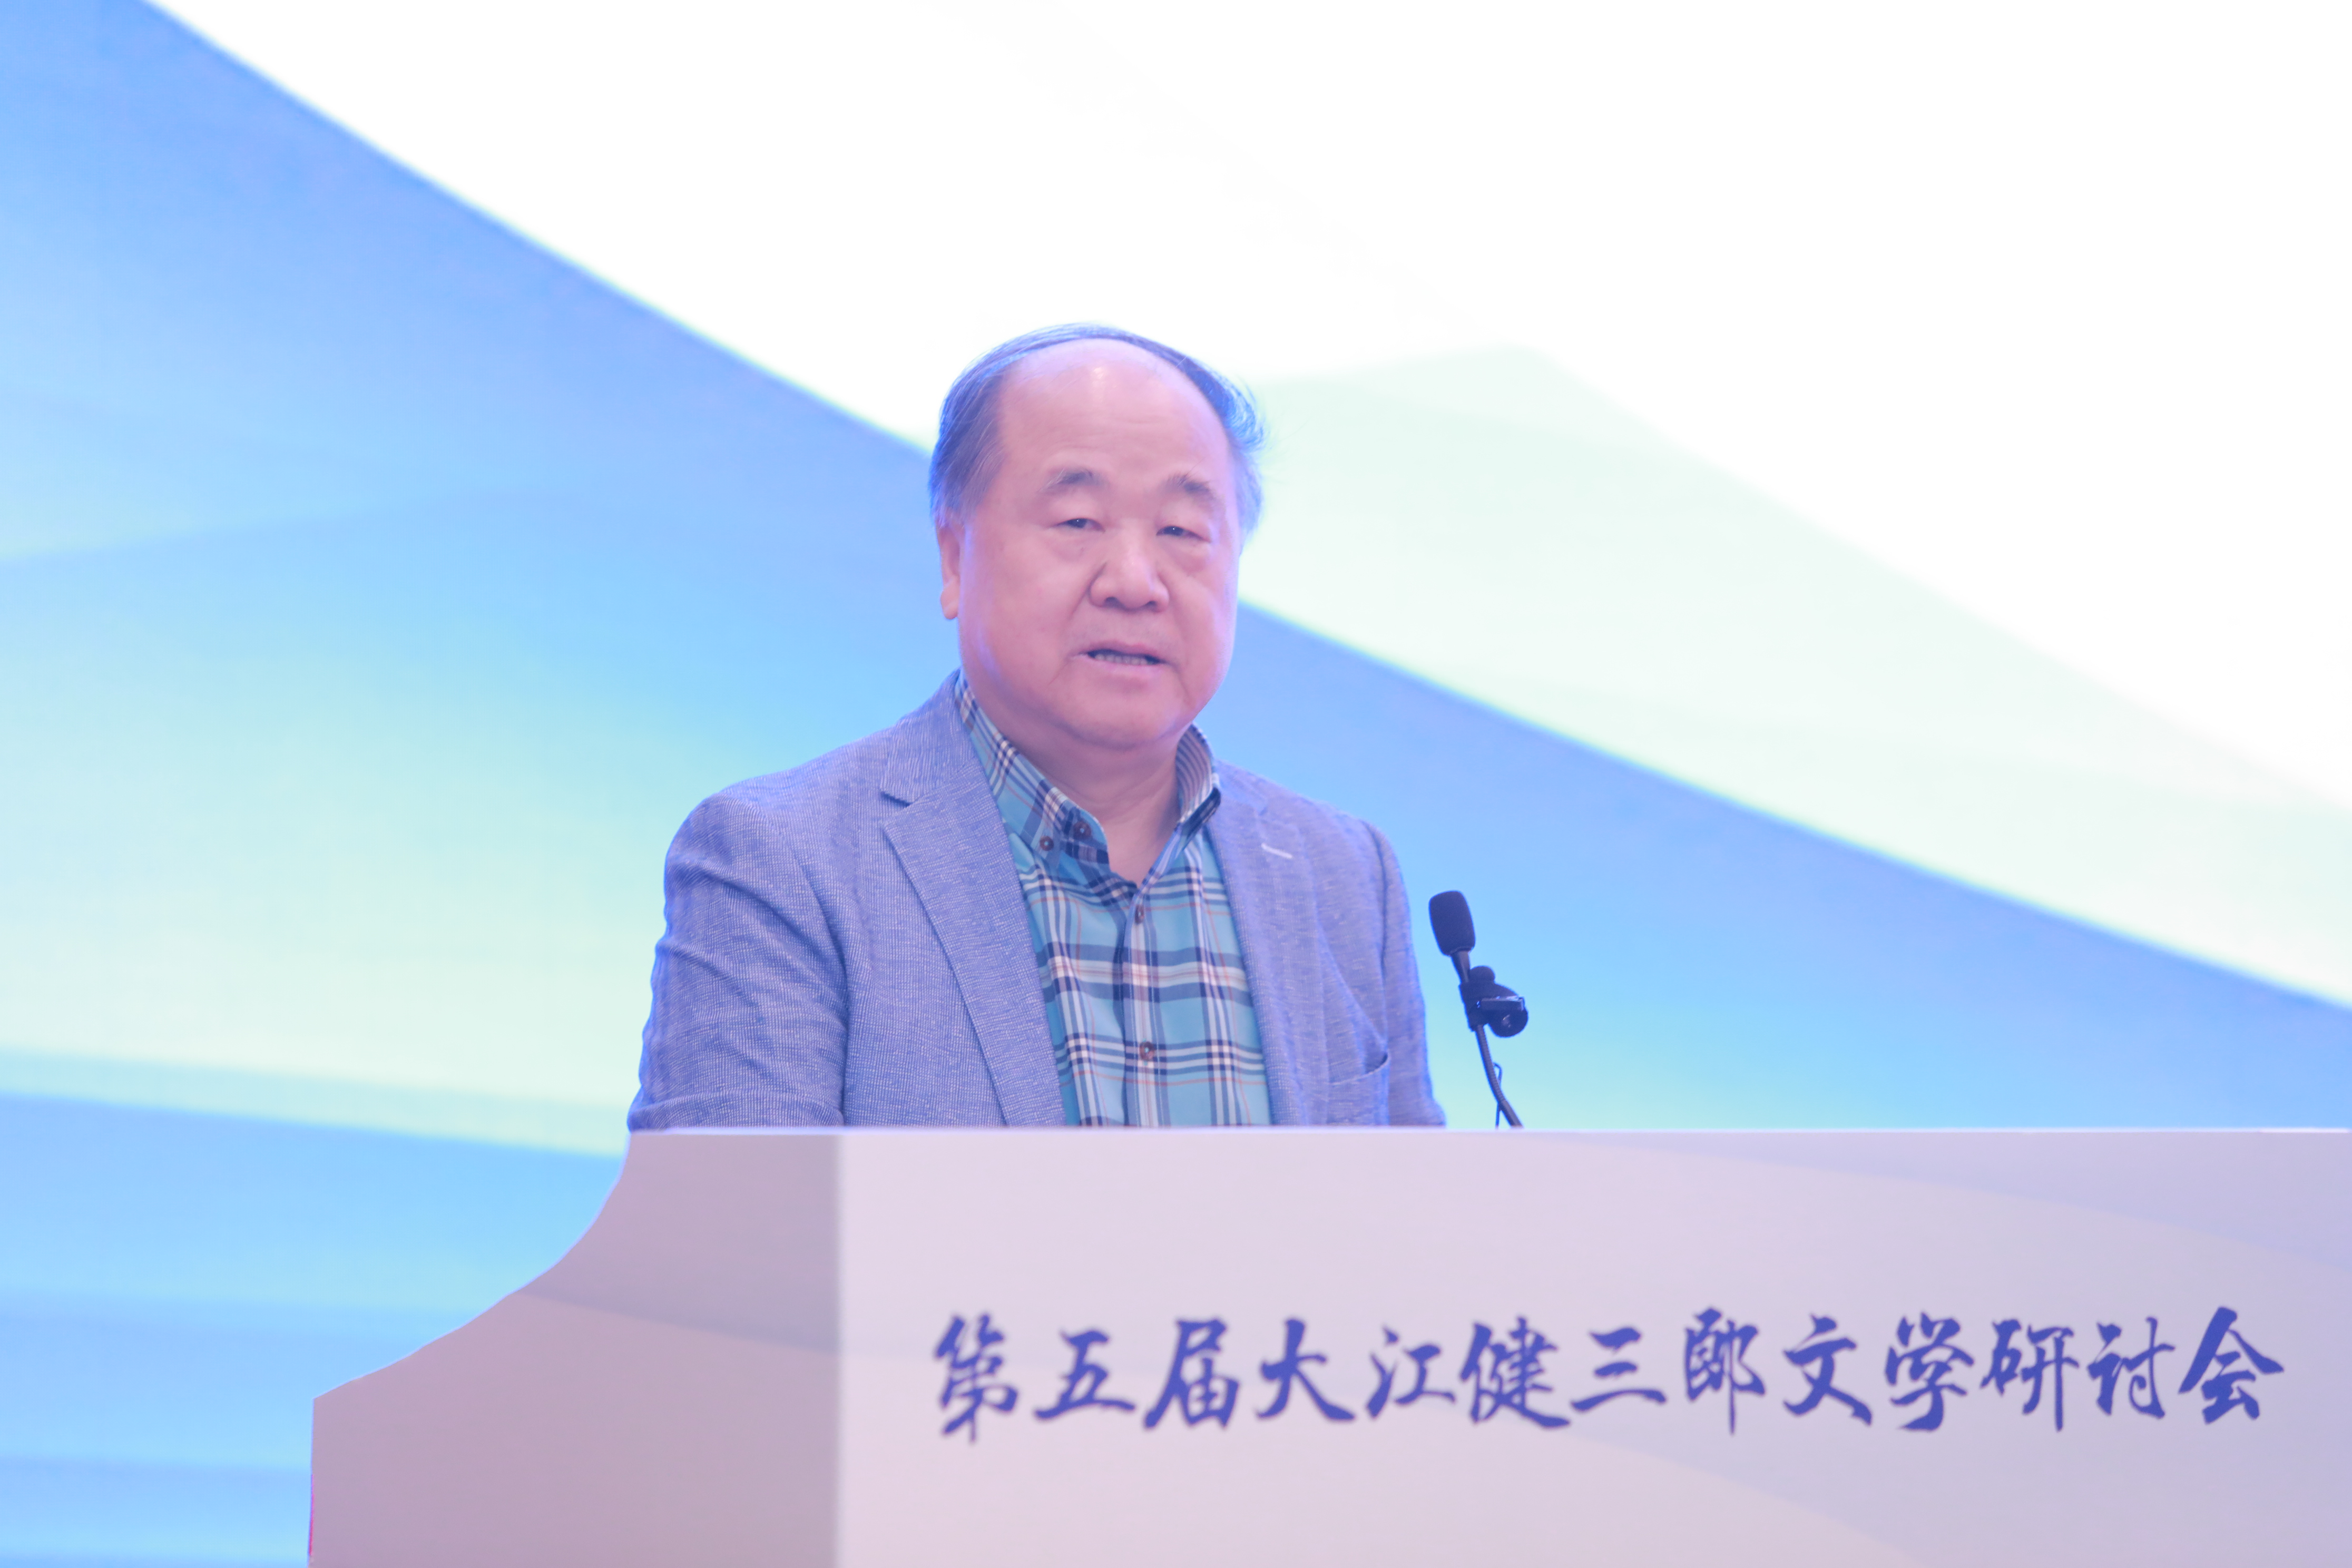 1中国作家协会副主席、诺贝尔文学奖获得者莫言出席活动并发表演讲.JPG